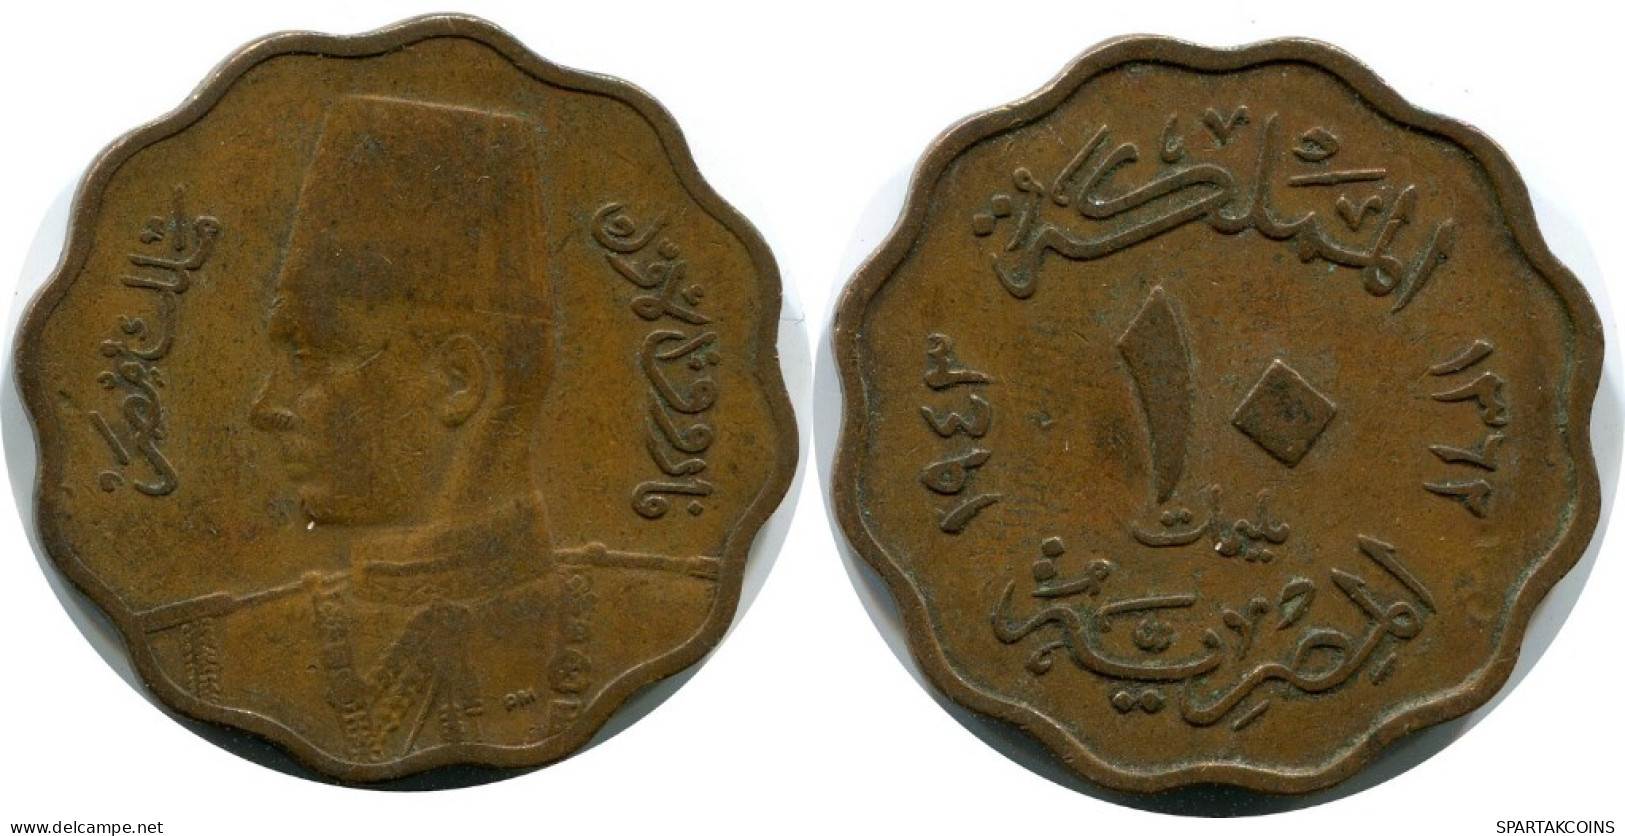 10 MILLIEMES 1943 EGYPT Islamic Coin #AK027.U.A - Egipto